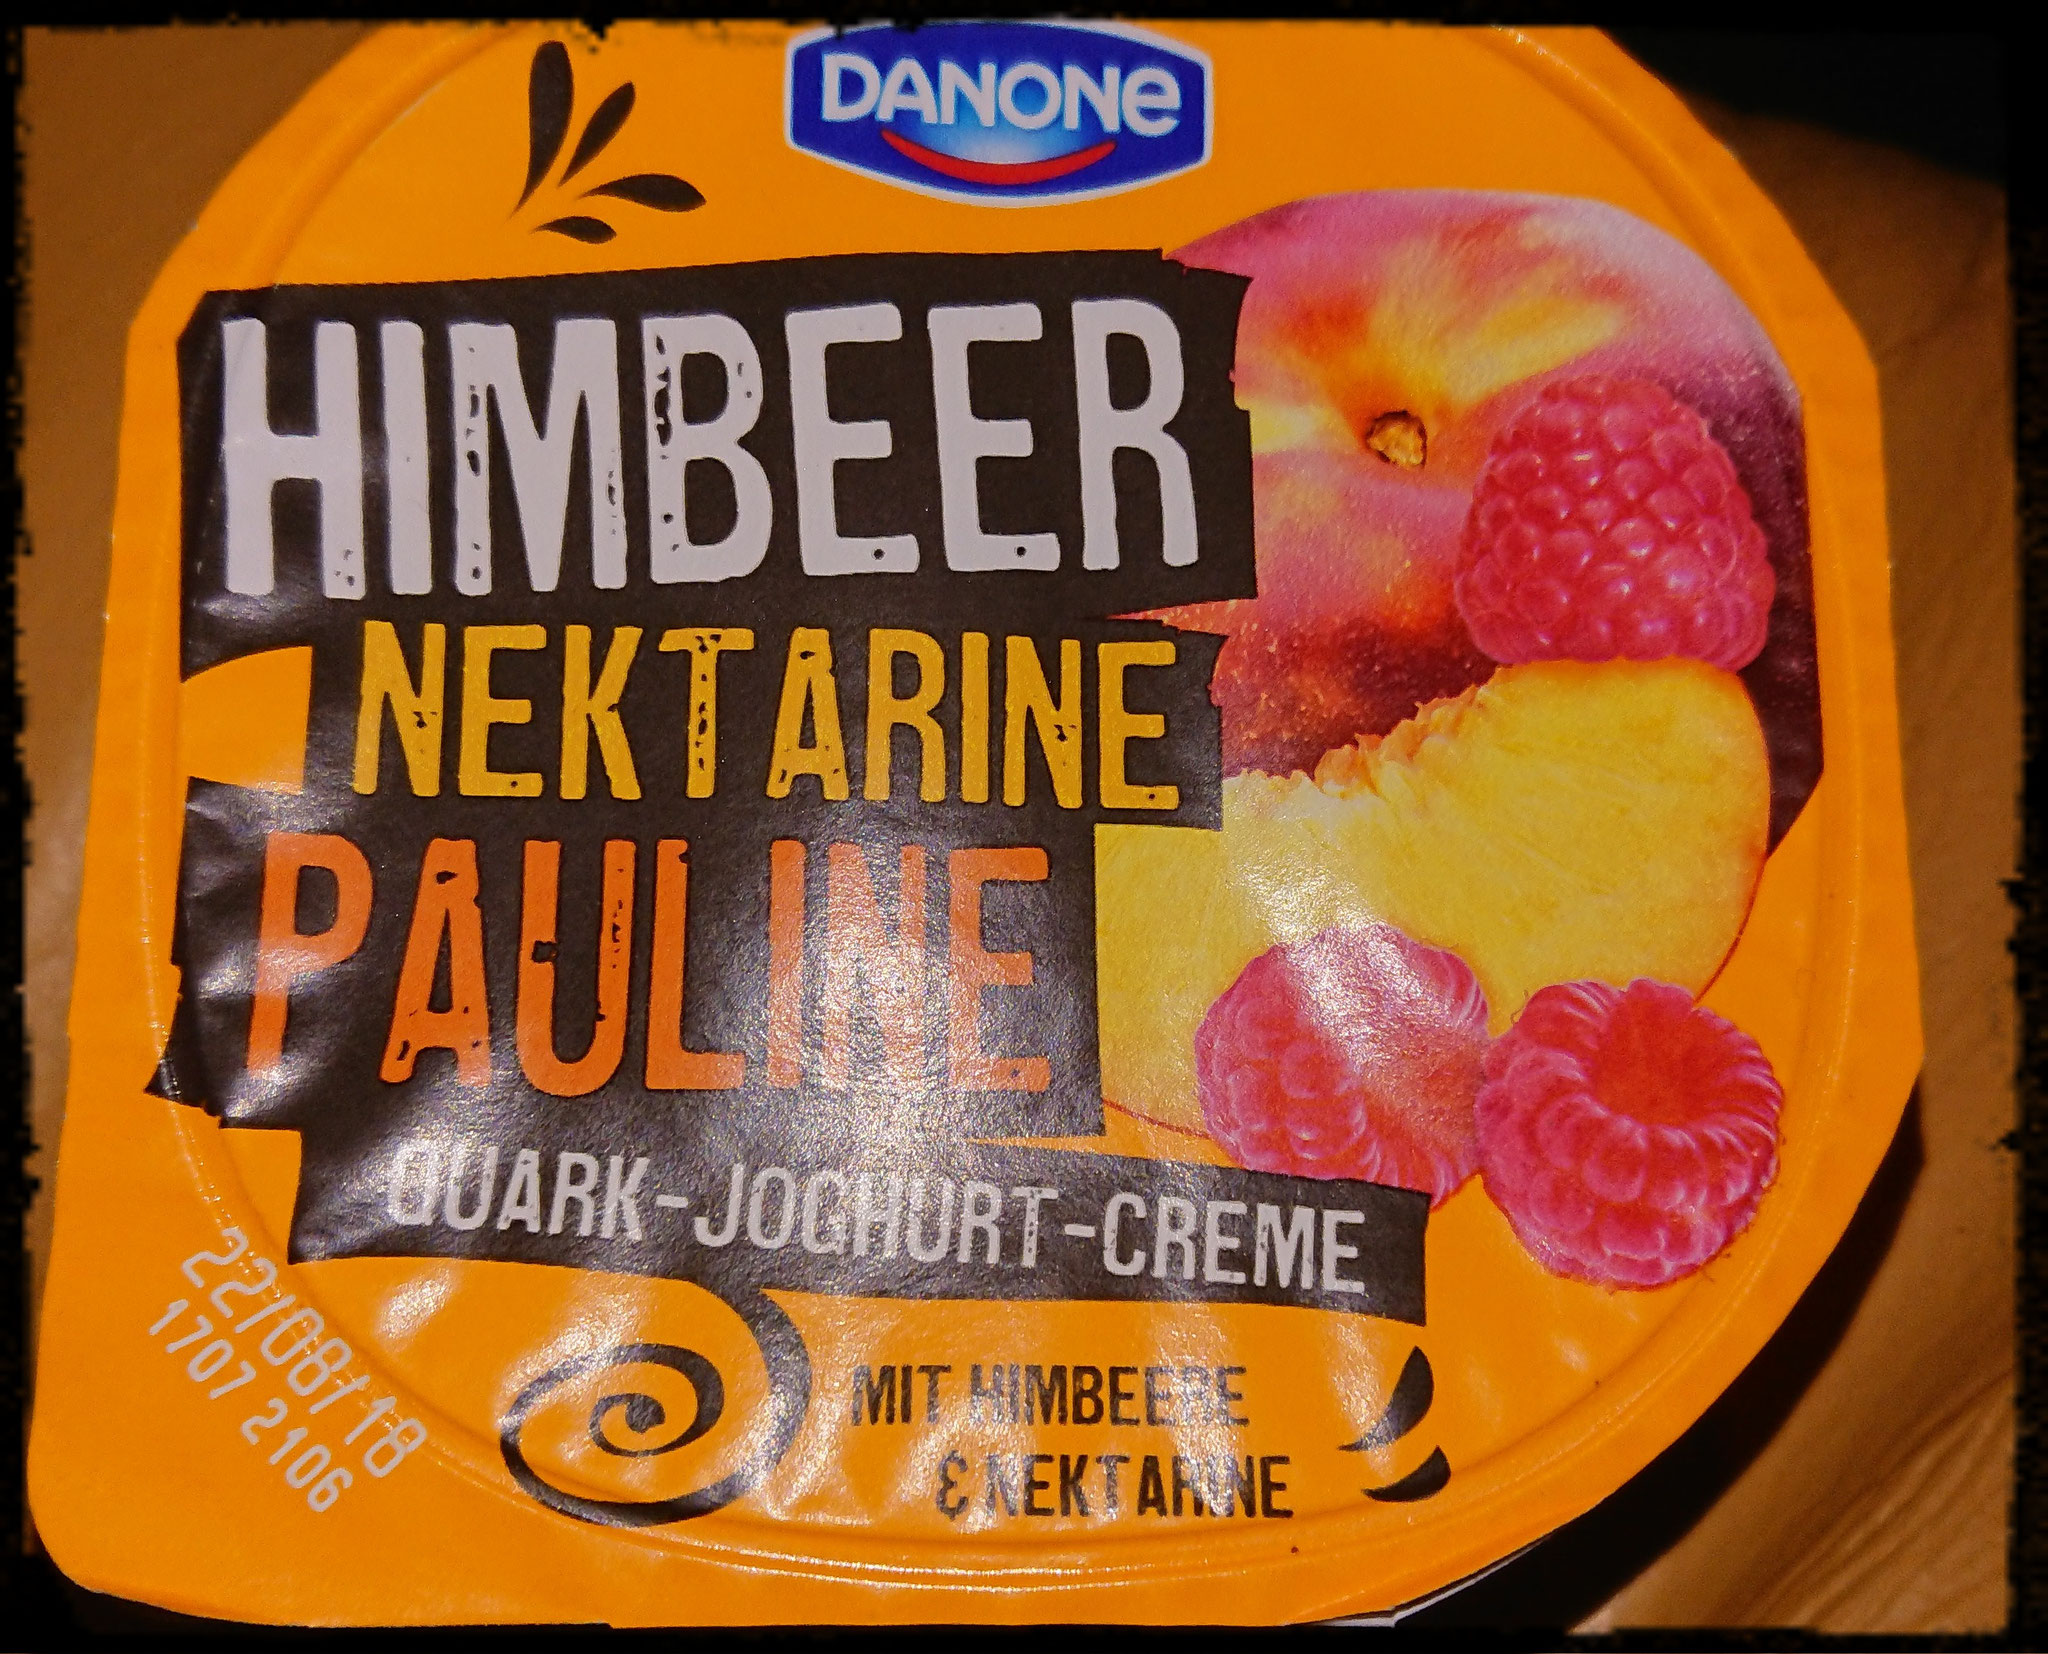 Danone Quark-Joghurt-Creme - zuckerwelt im test